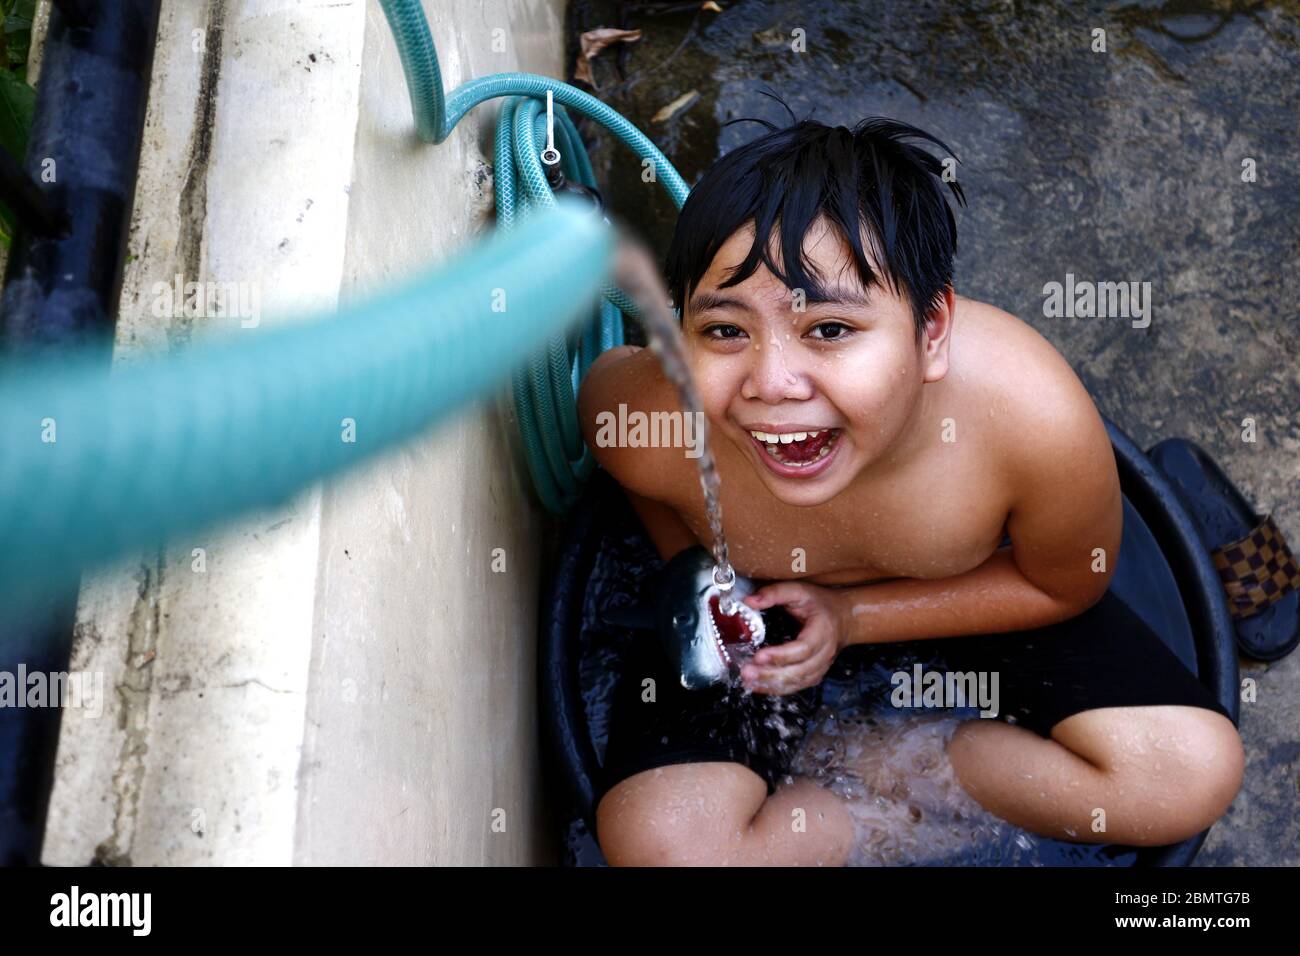 Photo d'un jeune garçon asiatique qui se rafraîchi dans un bassin d'eau avec un tuyau d'eau comme une douche de fortune pour battre la chaleur estivale. Banque D'Images